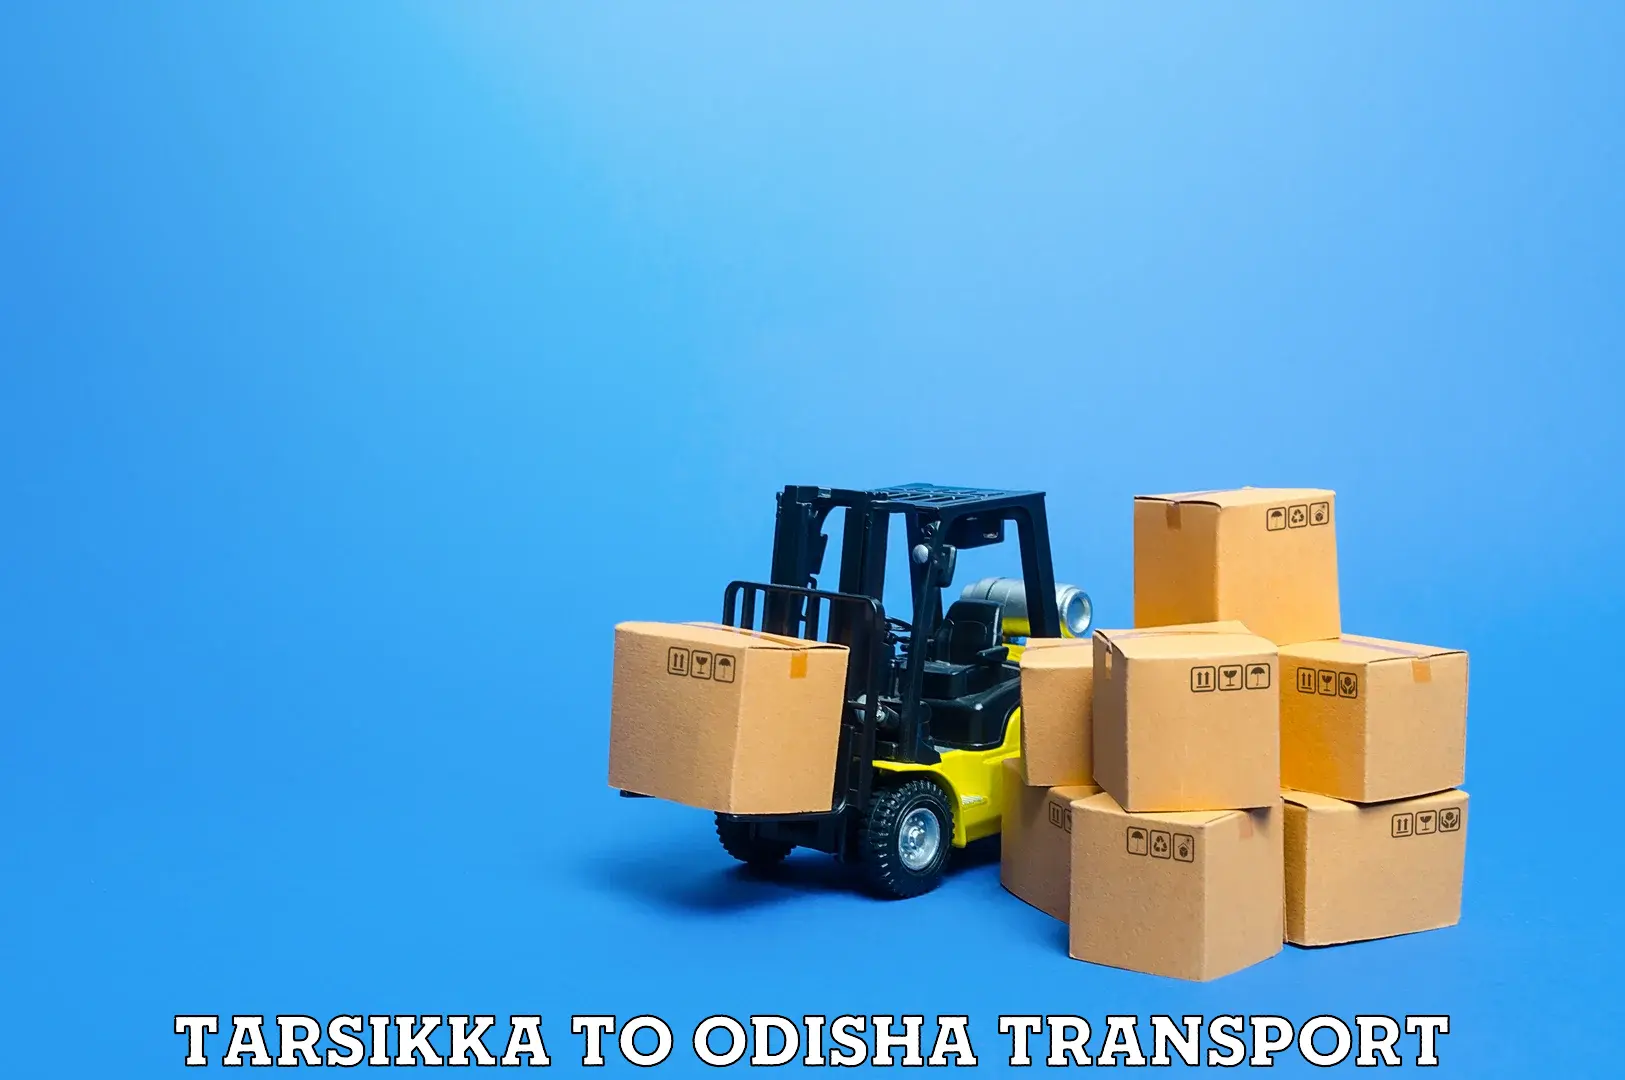 Shipping partner Tarsikka to Odisha